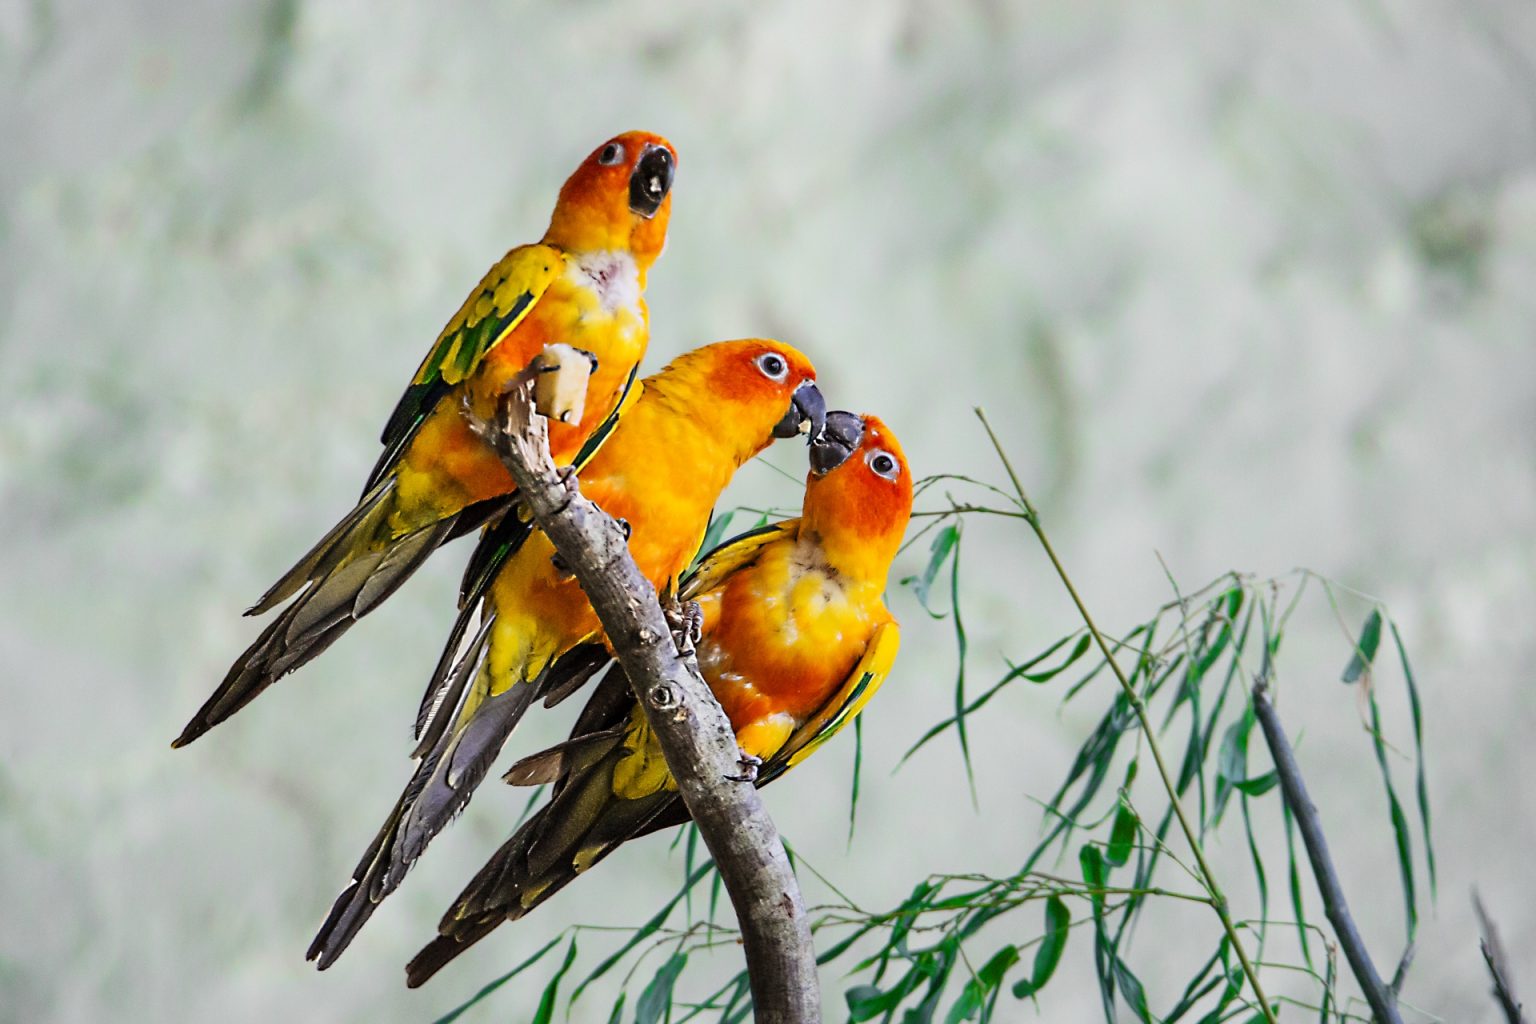 Tổng hợp hình ảnh chim Vẹt đẹp nhất - [Kích thước hình ảnh: 1536x1024 px]